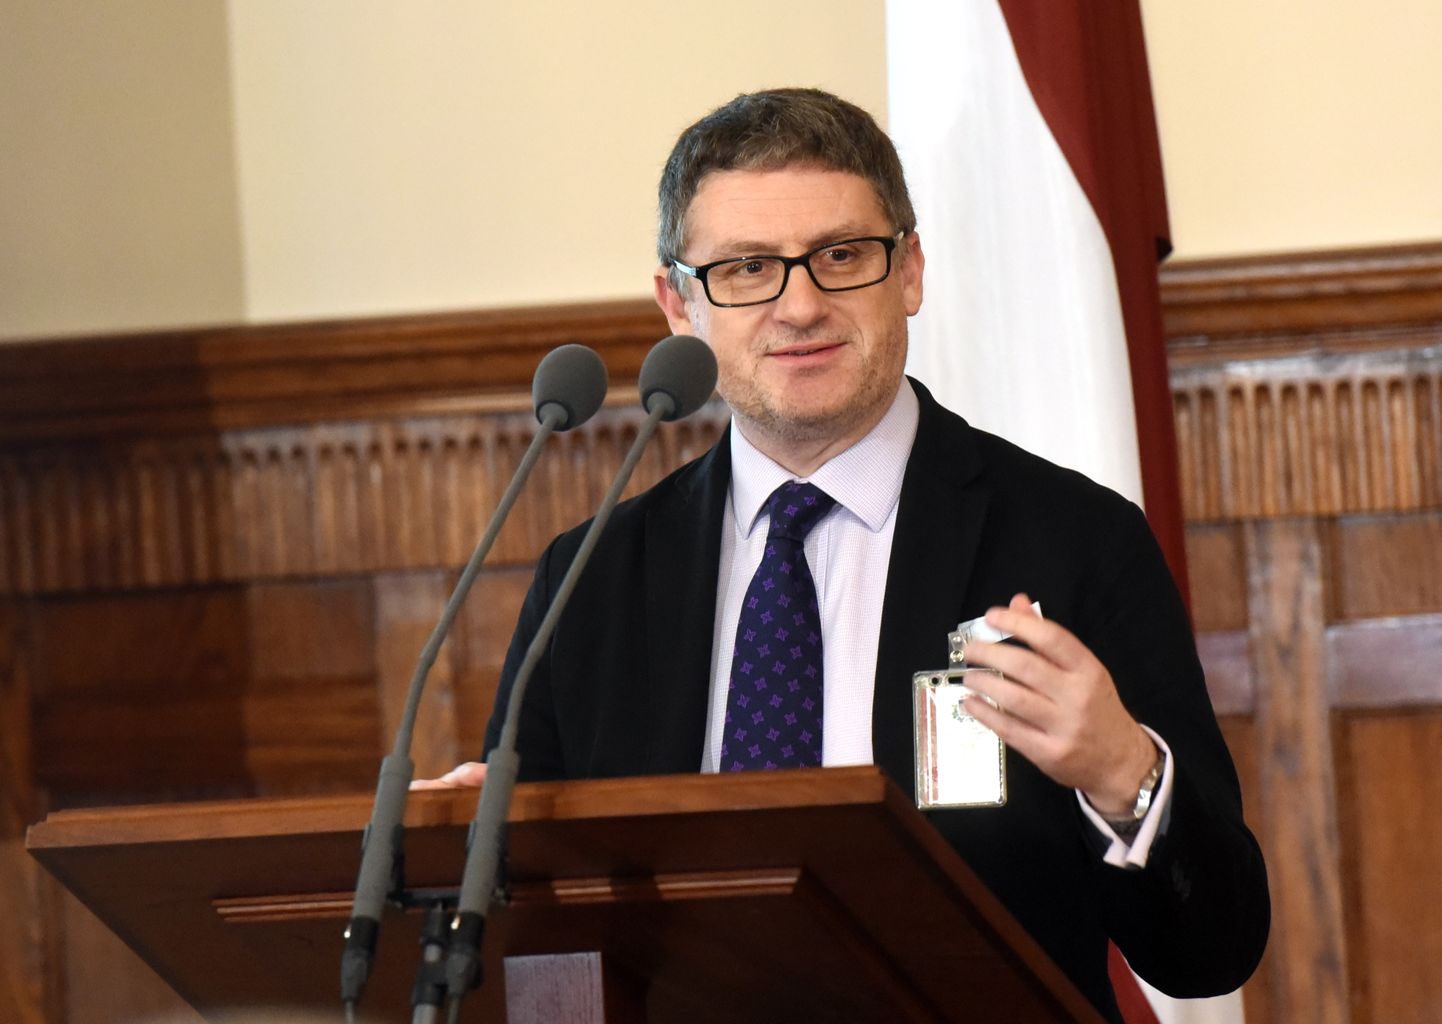 Prāgas starptautisko attiecību institūta vecākais pētnieks Marks Galeoti piedalās diskusijā "Latvijas drošība 21. gadsimtā